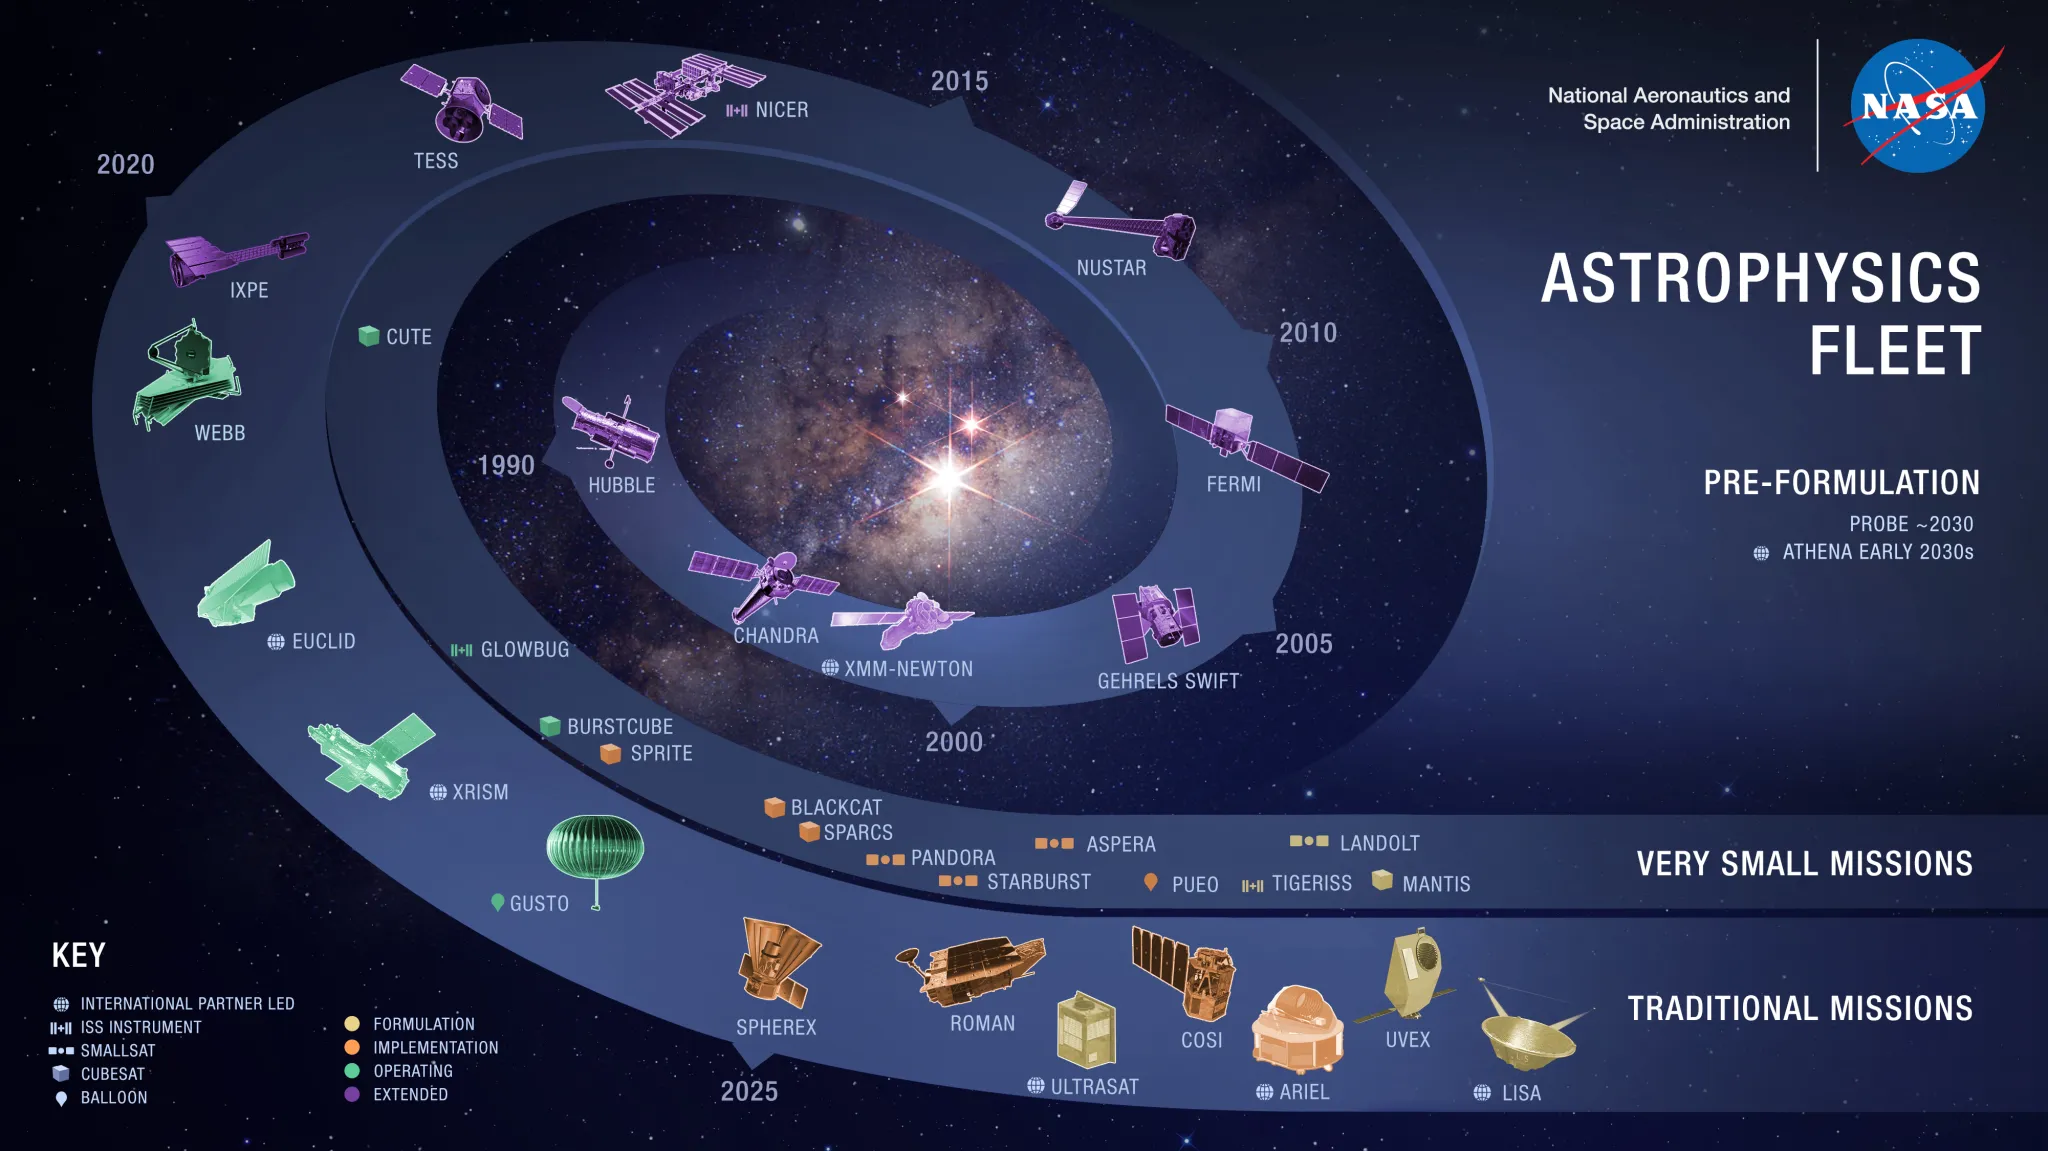 Astrophysics Fleet